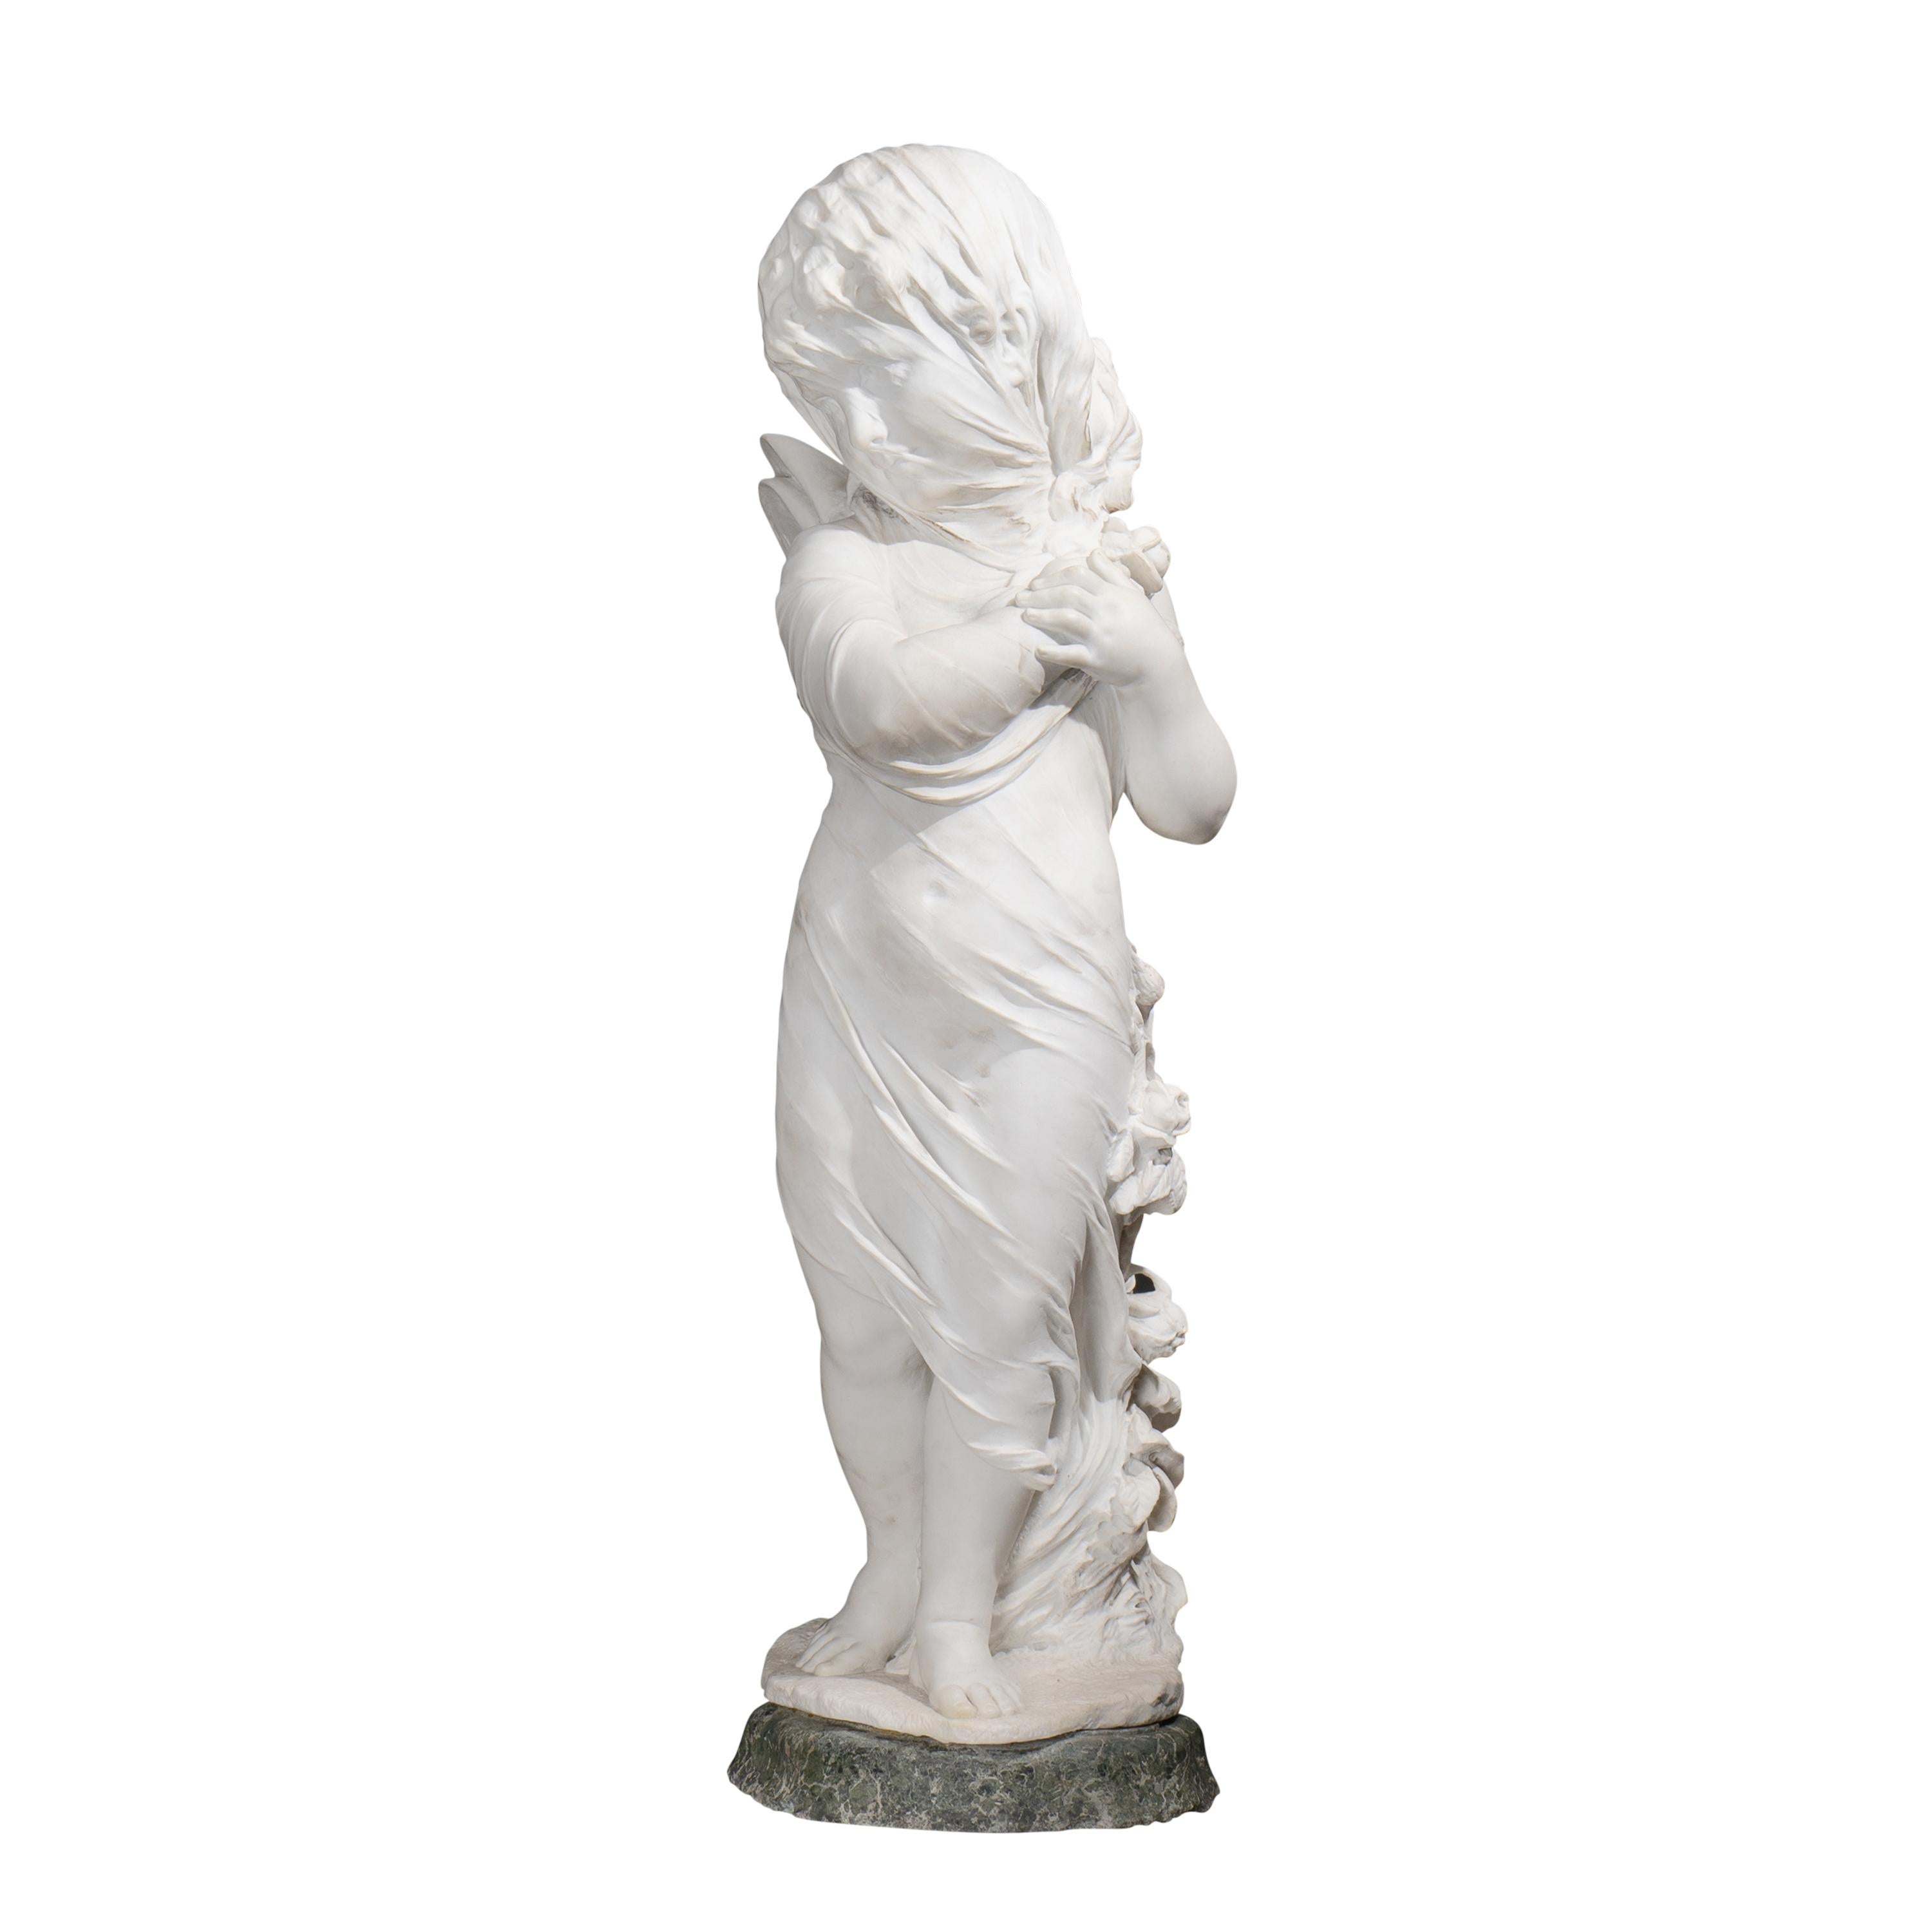 Une sculpture d'Orazio Andreoni datant de la fin du XIXe siècle ou du début du XXe siècle et représentant un Cupidon voilé est un mélange exquis d'art classique et d'allure romantique. Andreoni, connu pour sa maîtrise artisanale, donne vie au